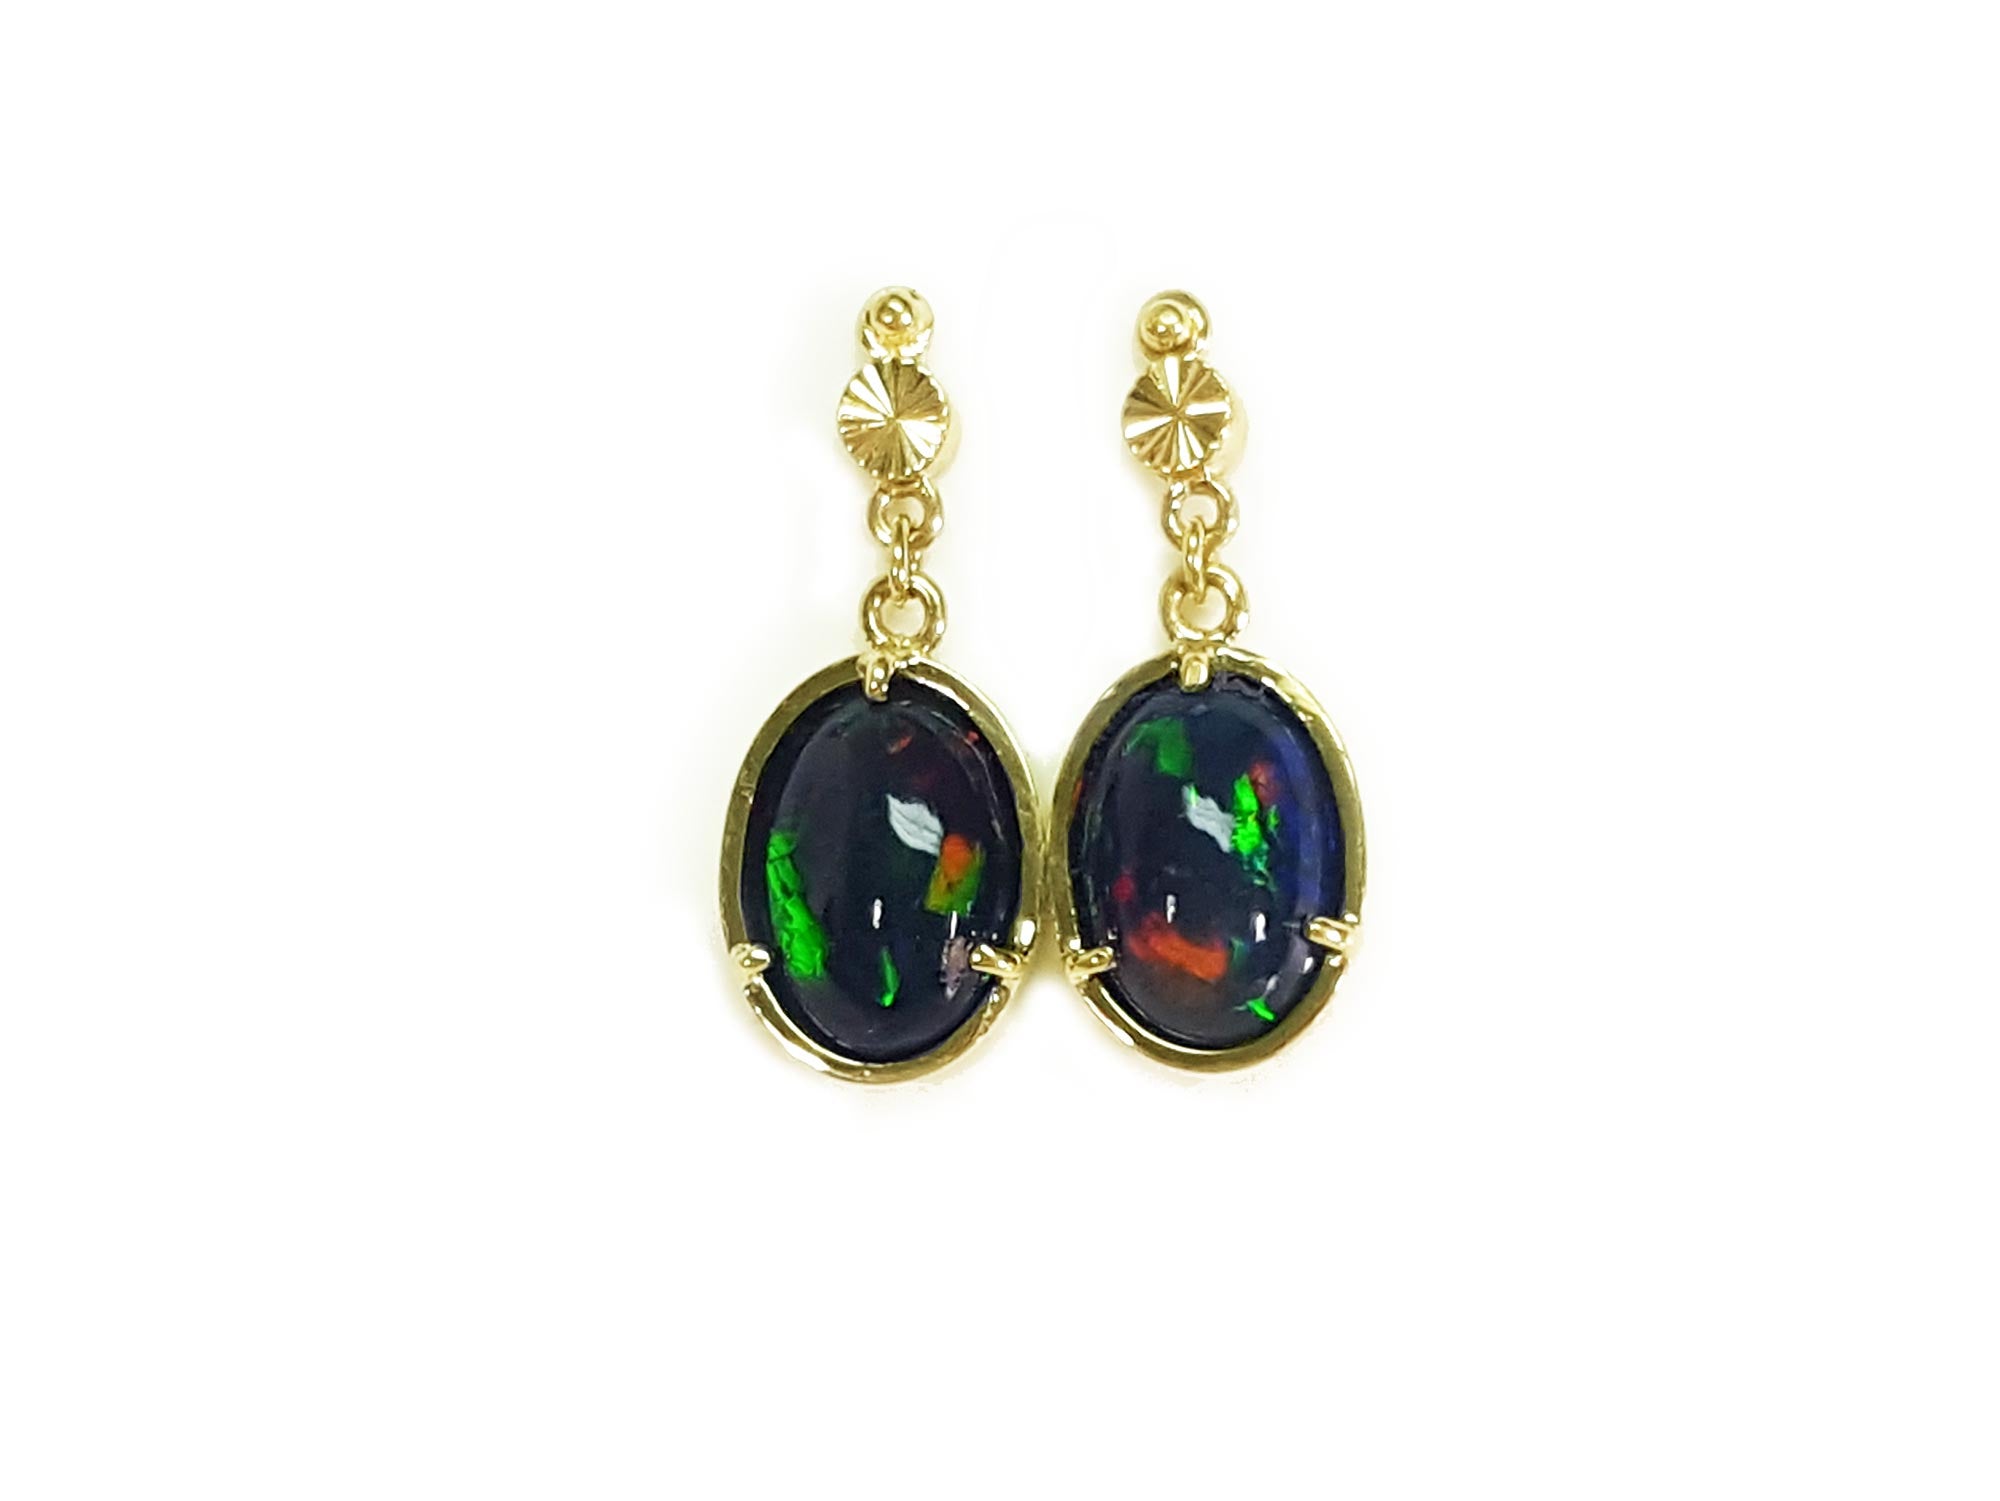 Welo opal earrings